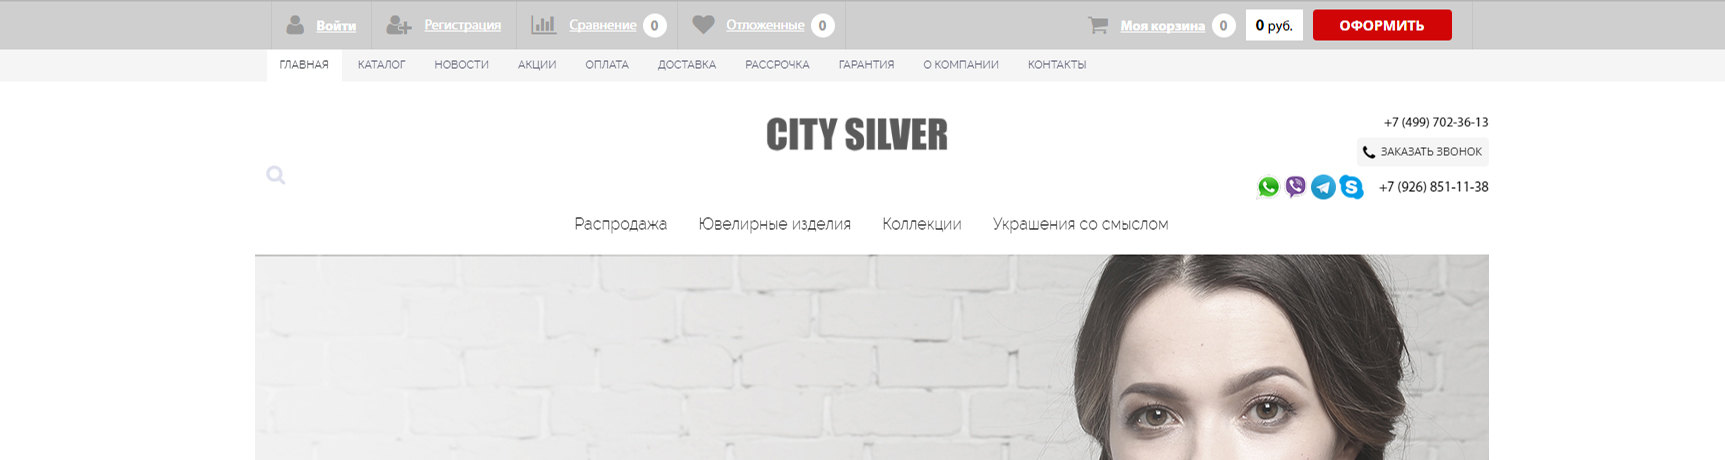 CitySilver